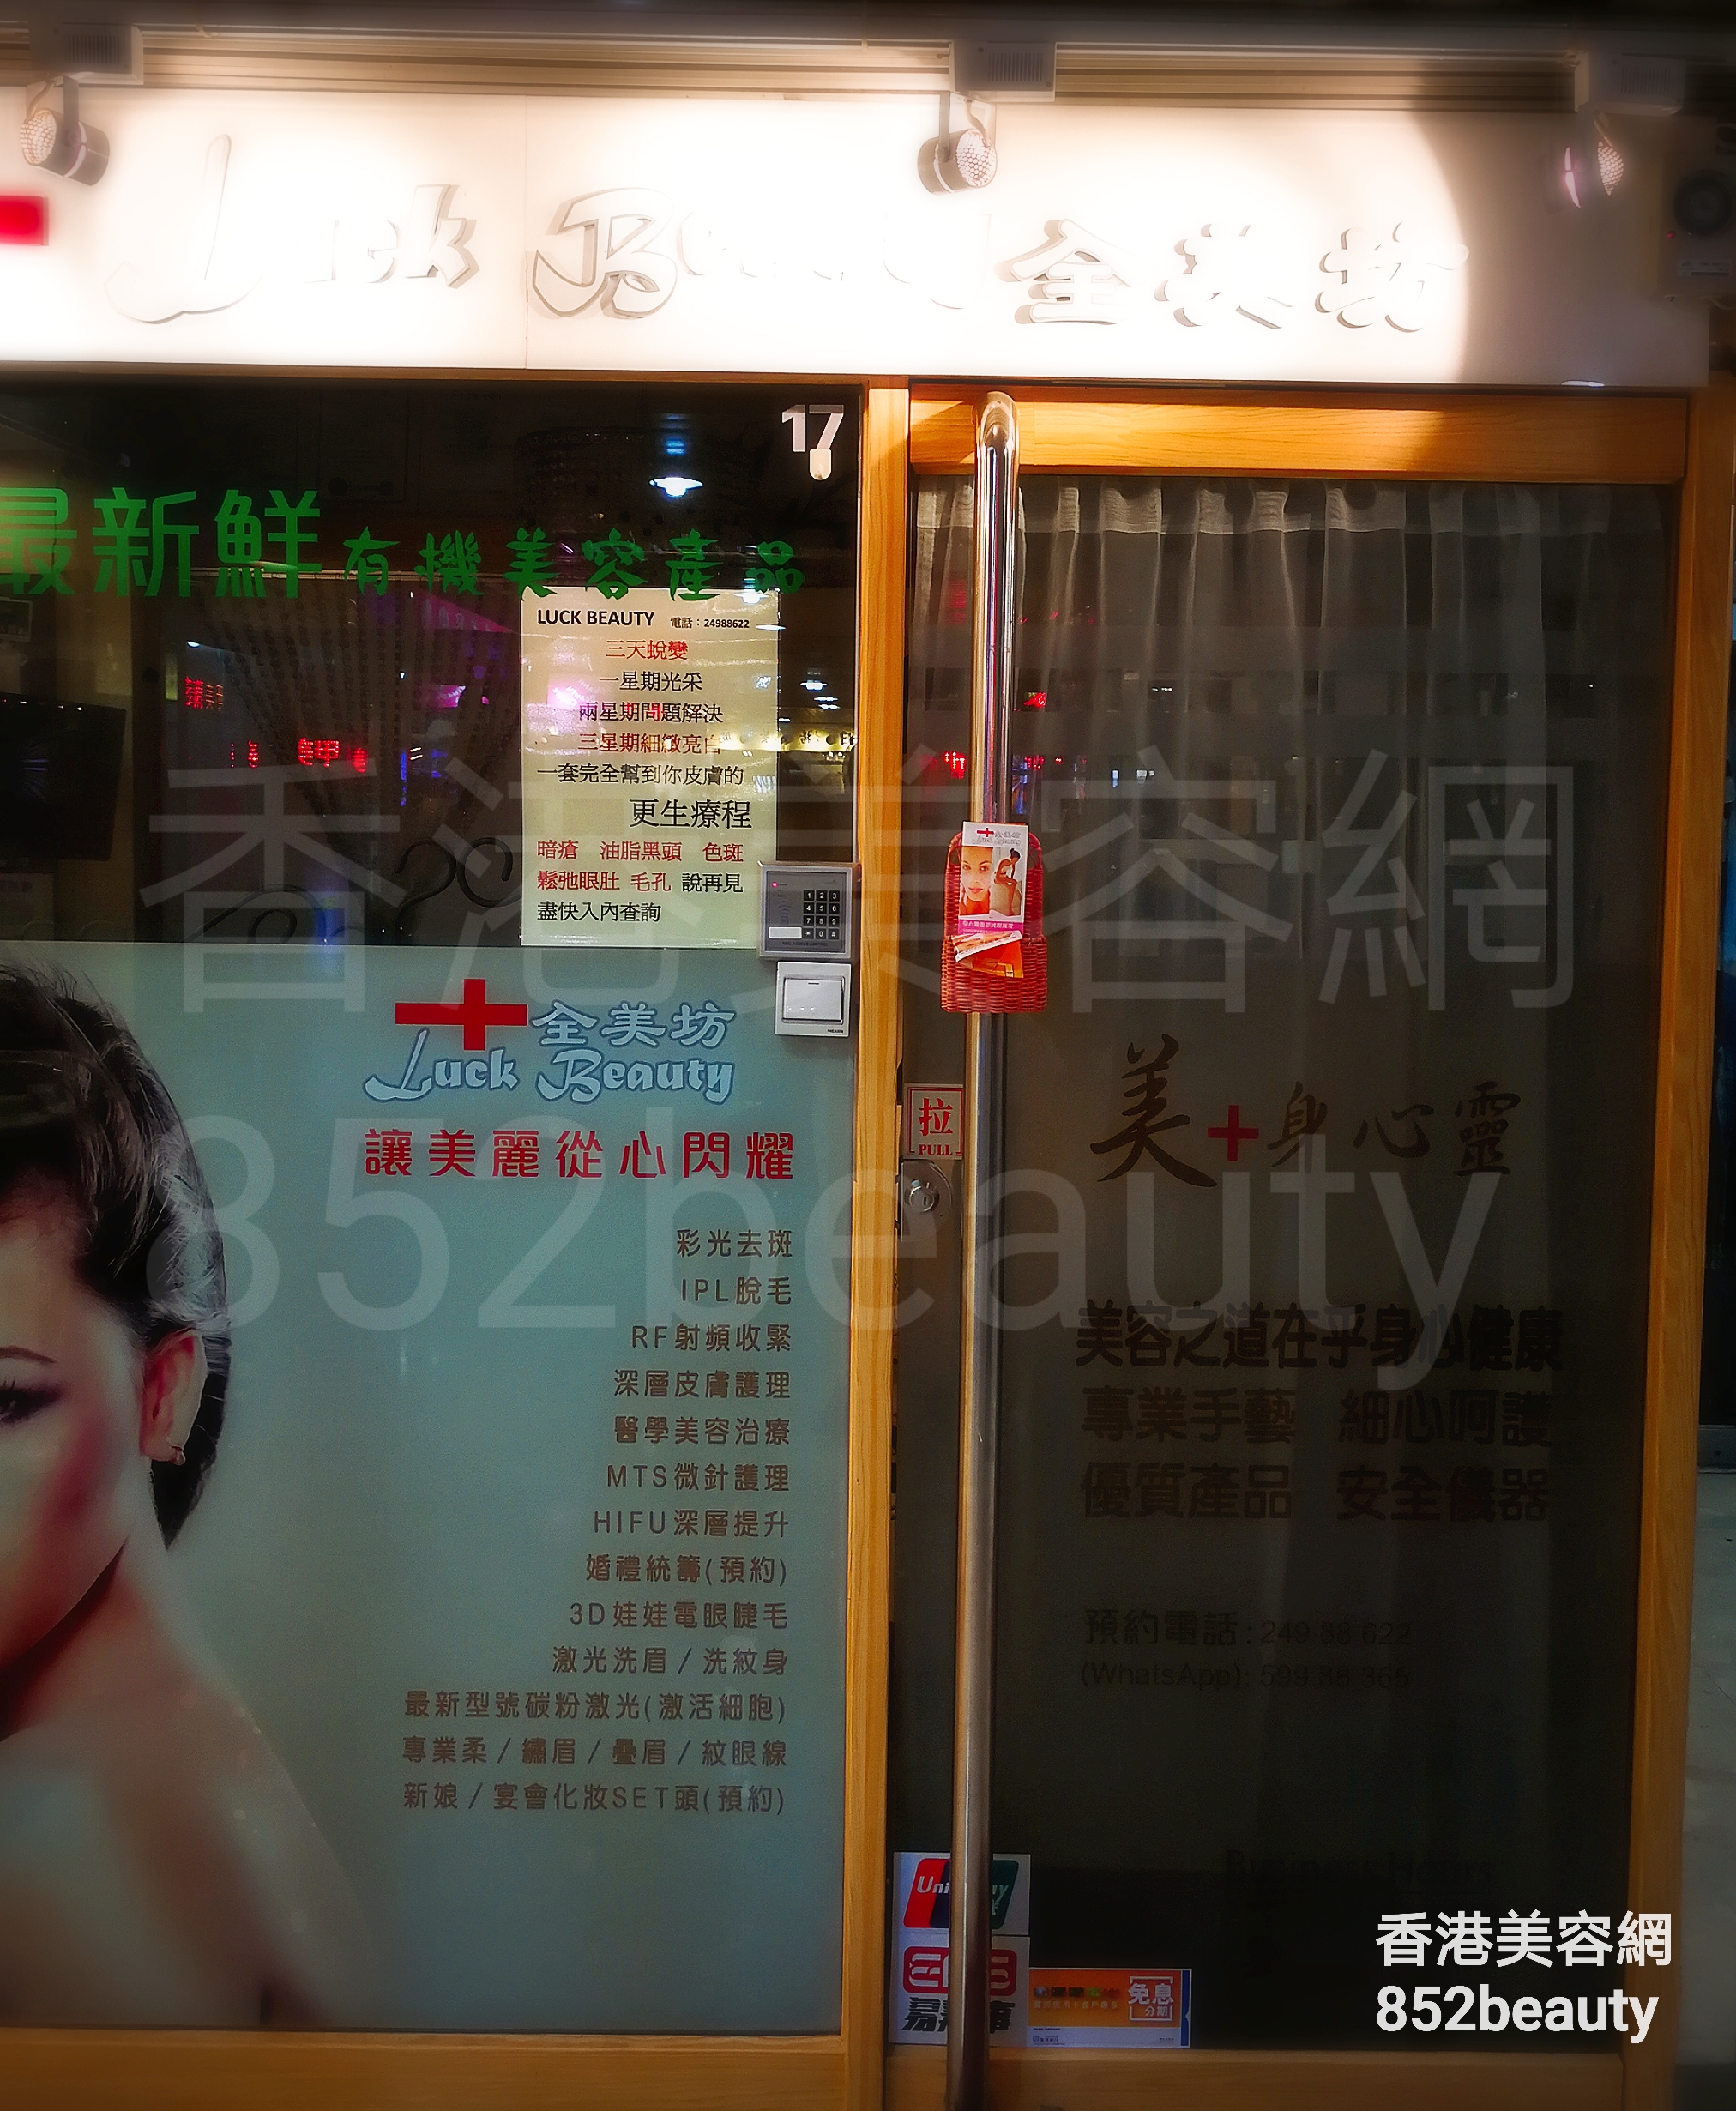 香港美容網 Hong Kong Beauty Salon 美容院 / 美容師: Luck Beauty 全美坊 (荃灣店)